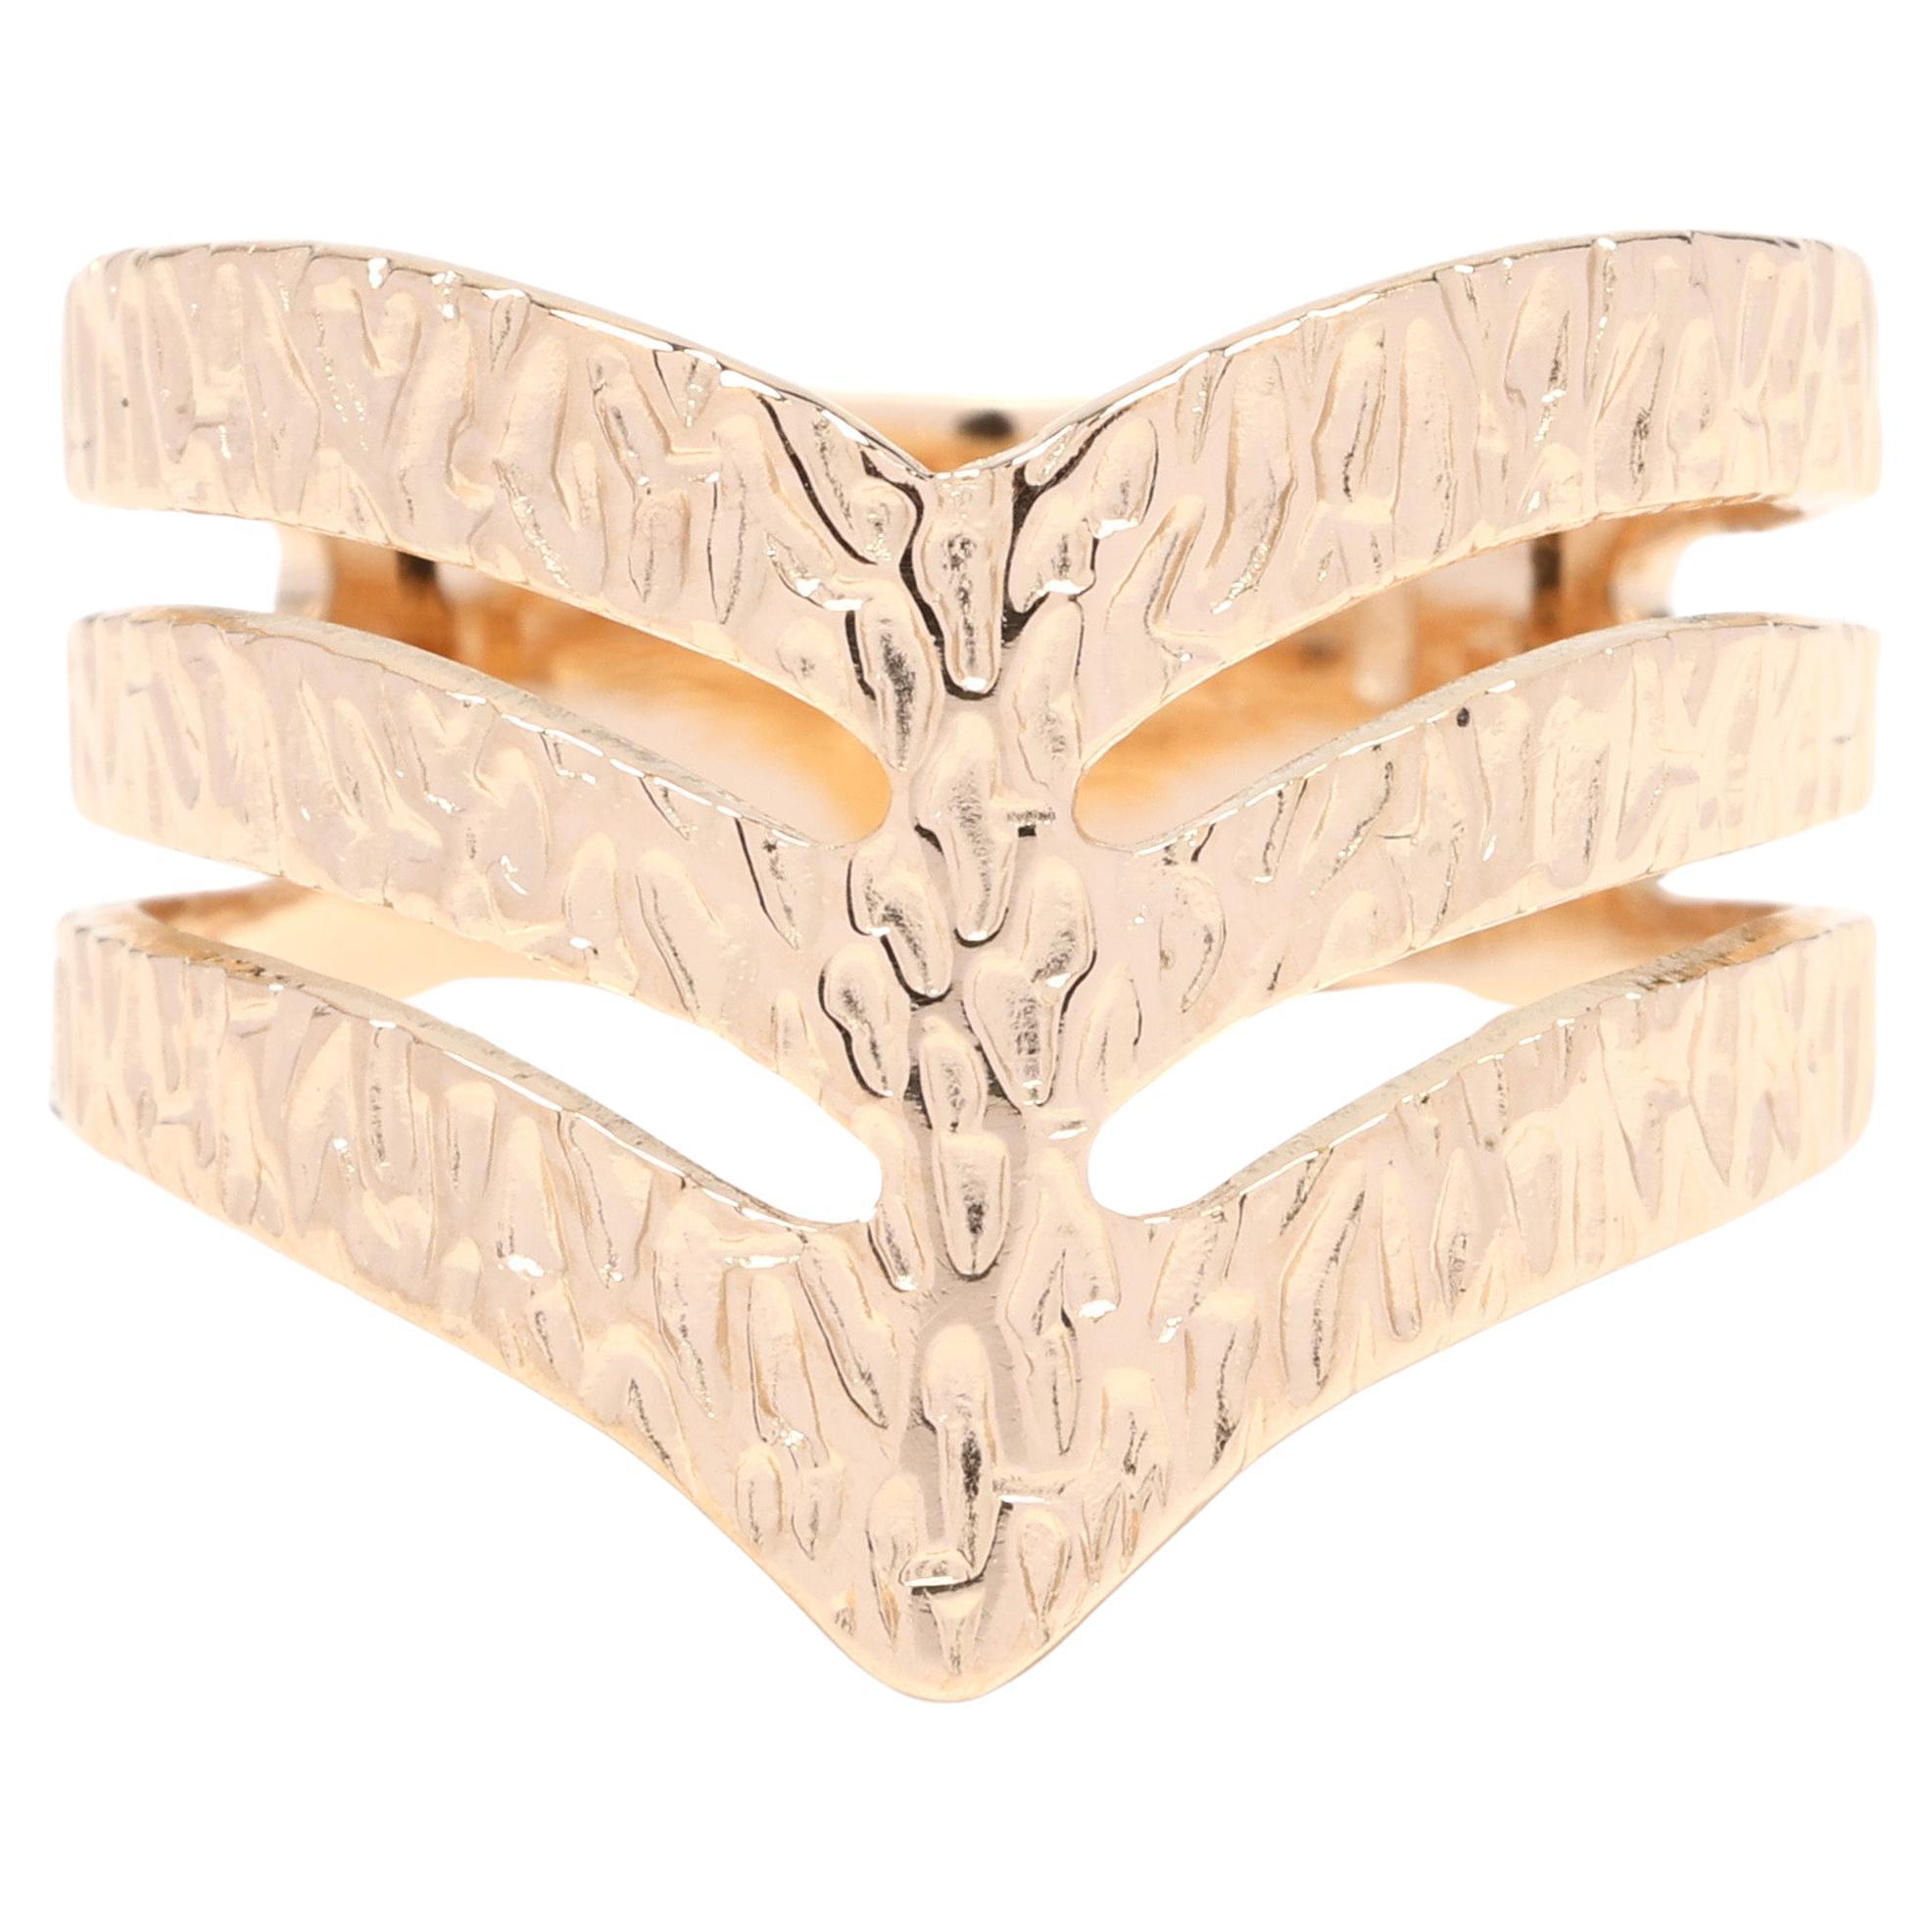 Thick gemusterter Bandring, 18k Gelbgold, Ring Größe 6,25, strukturierter Ring